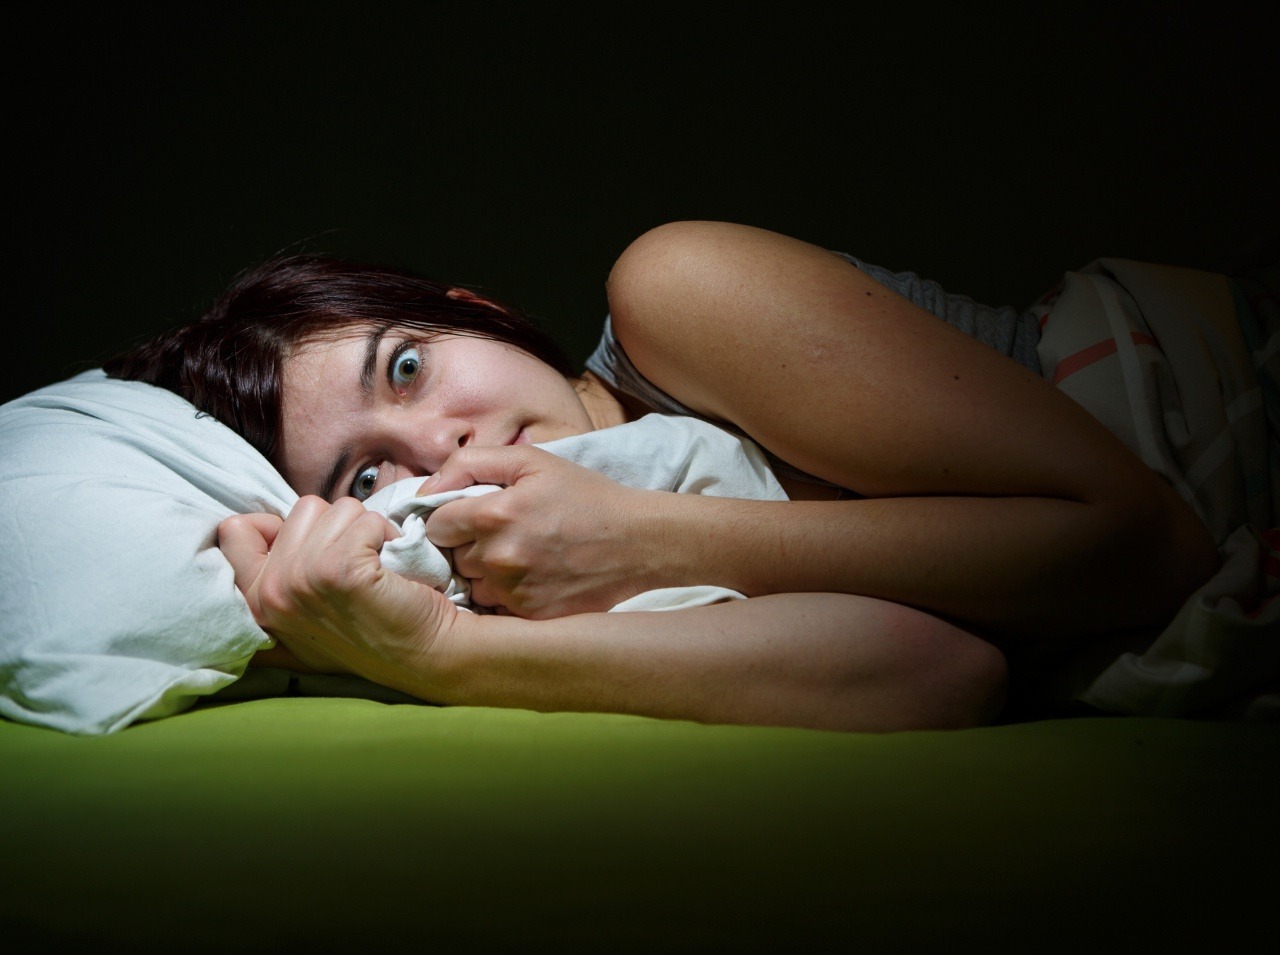 nedostatok spánku môže vyvolať vážne komplikácie, oddychujte!